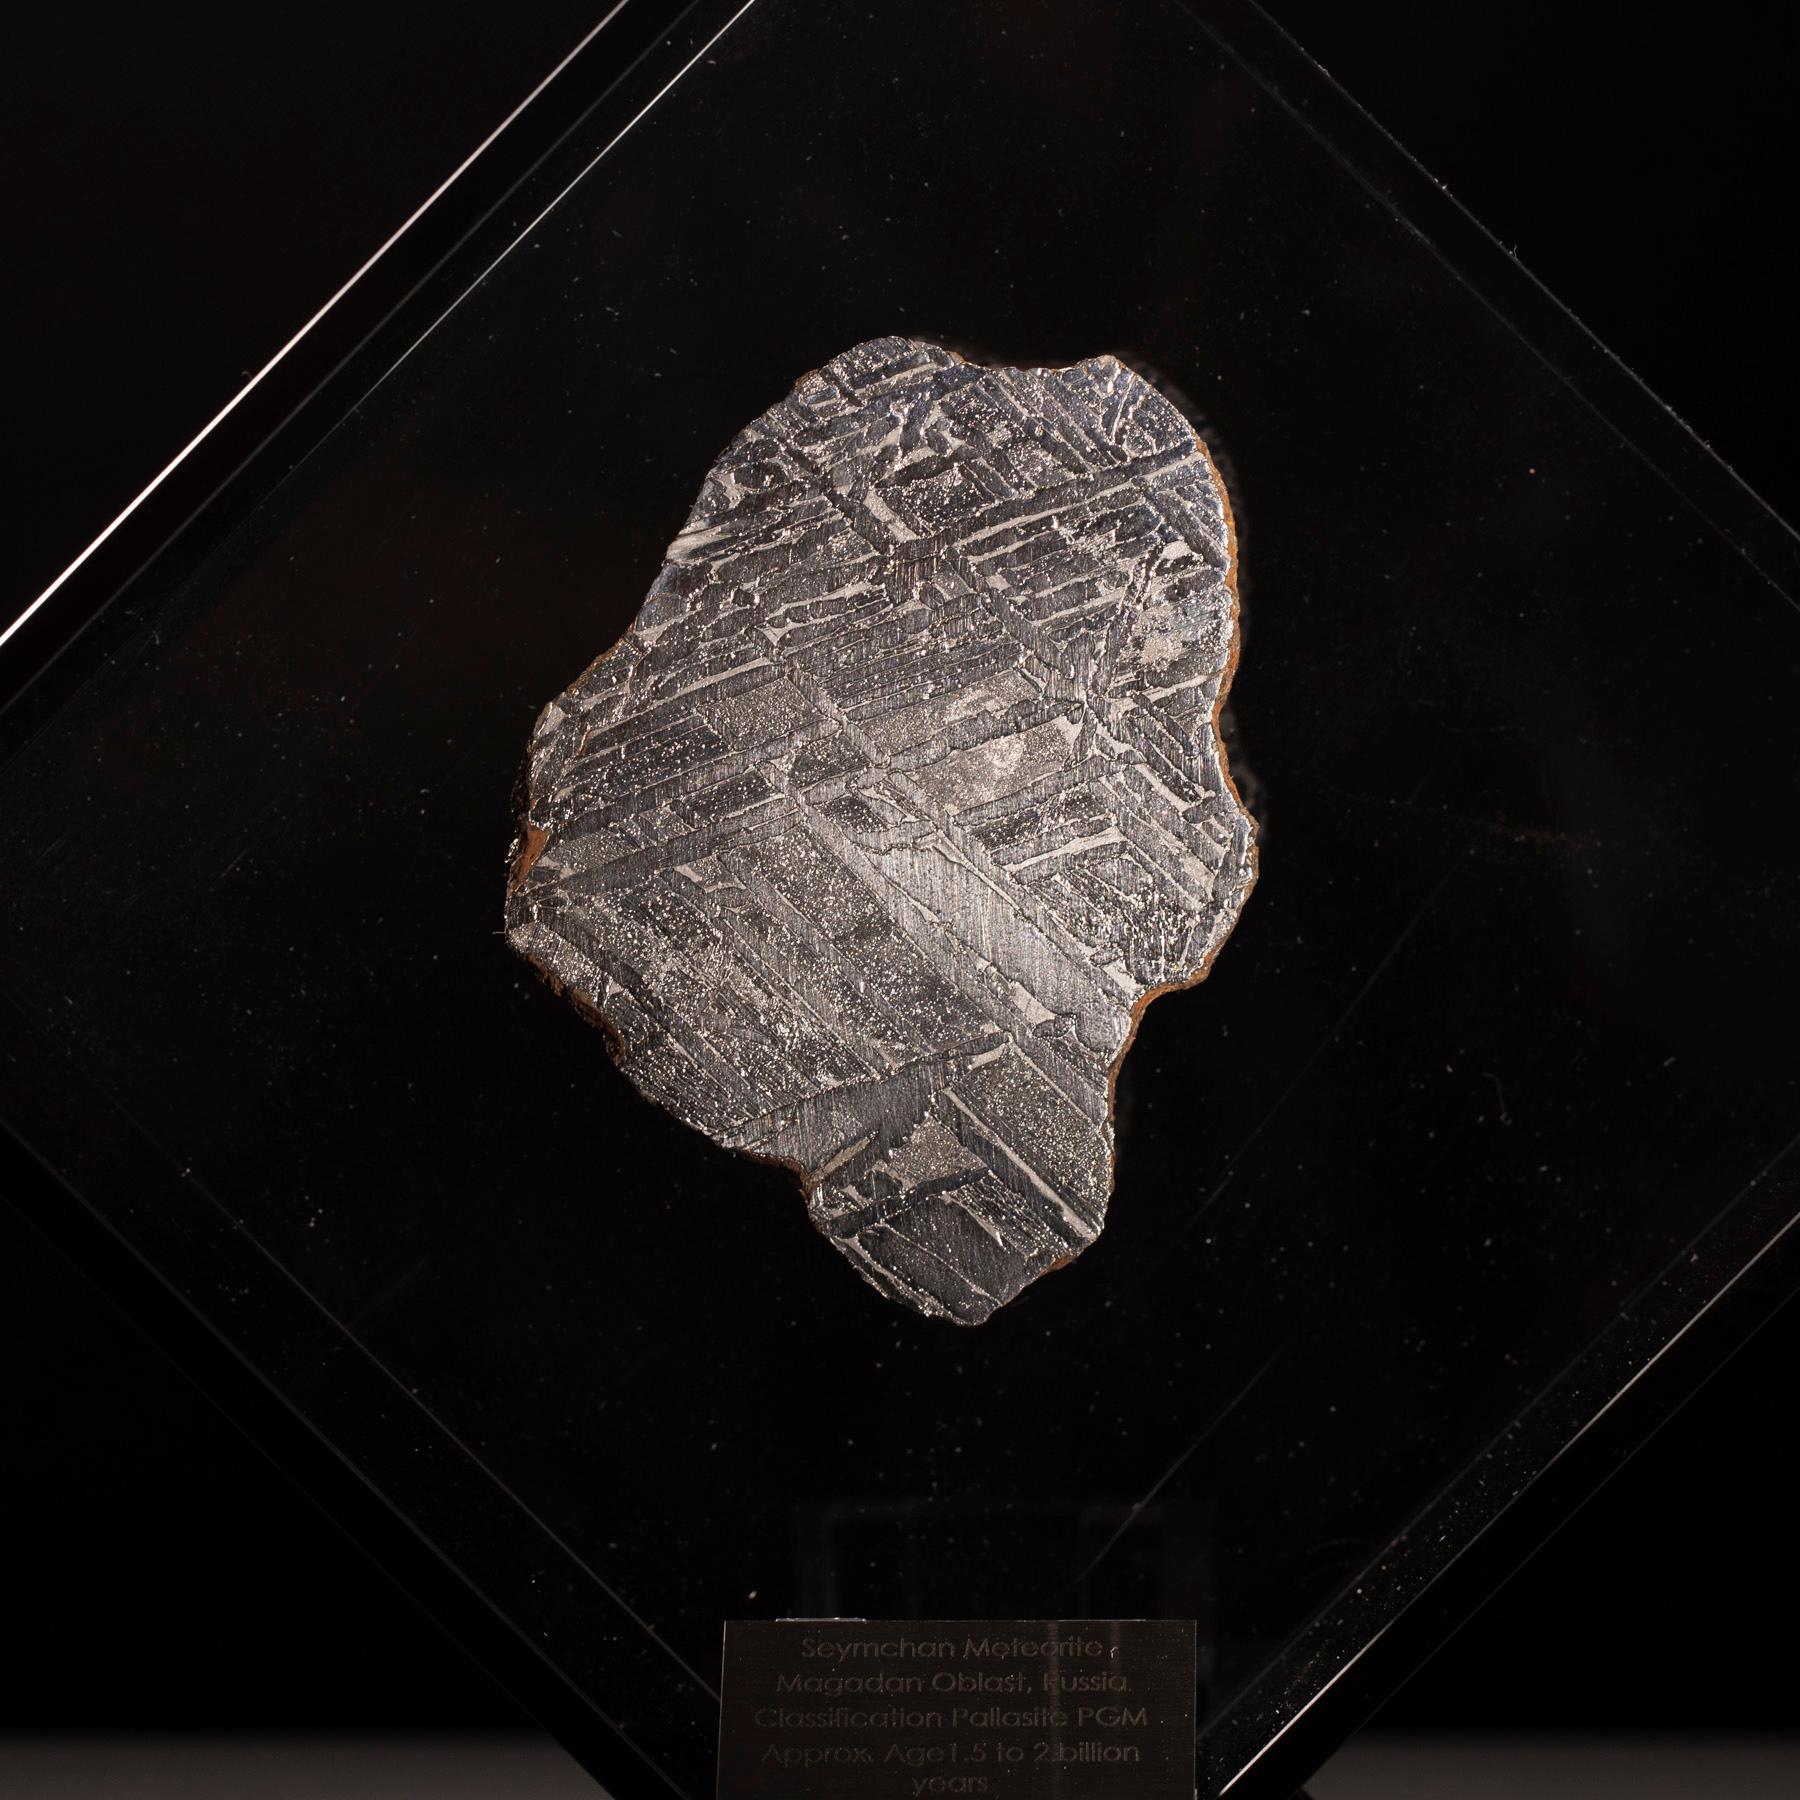 Contemporary Original Design, Seymchan Meteorite in a Black Acrylic Display